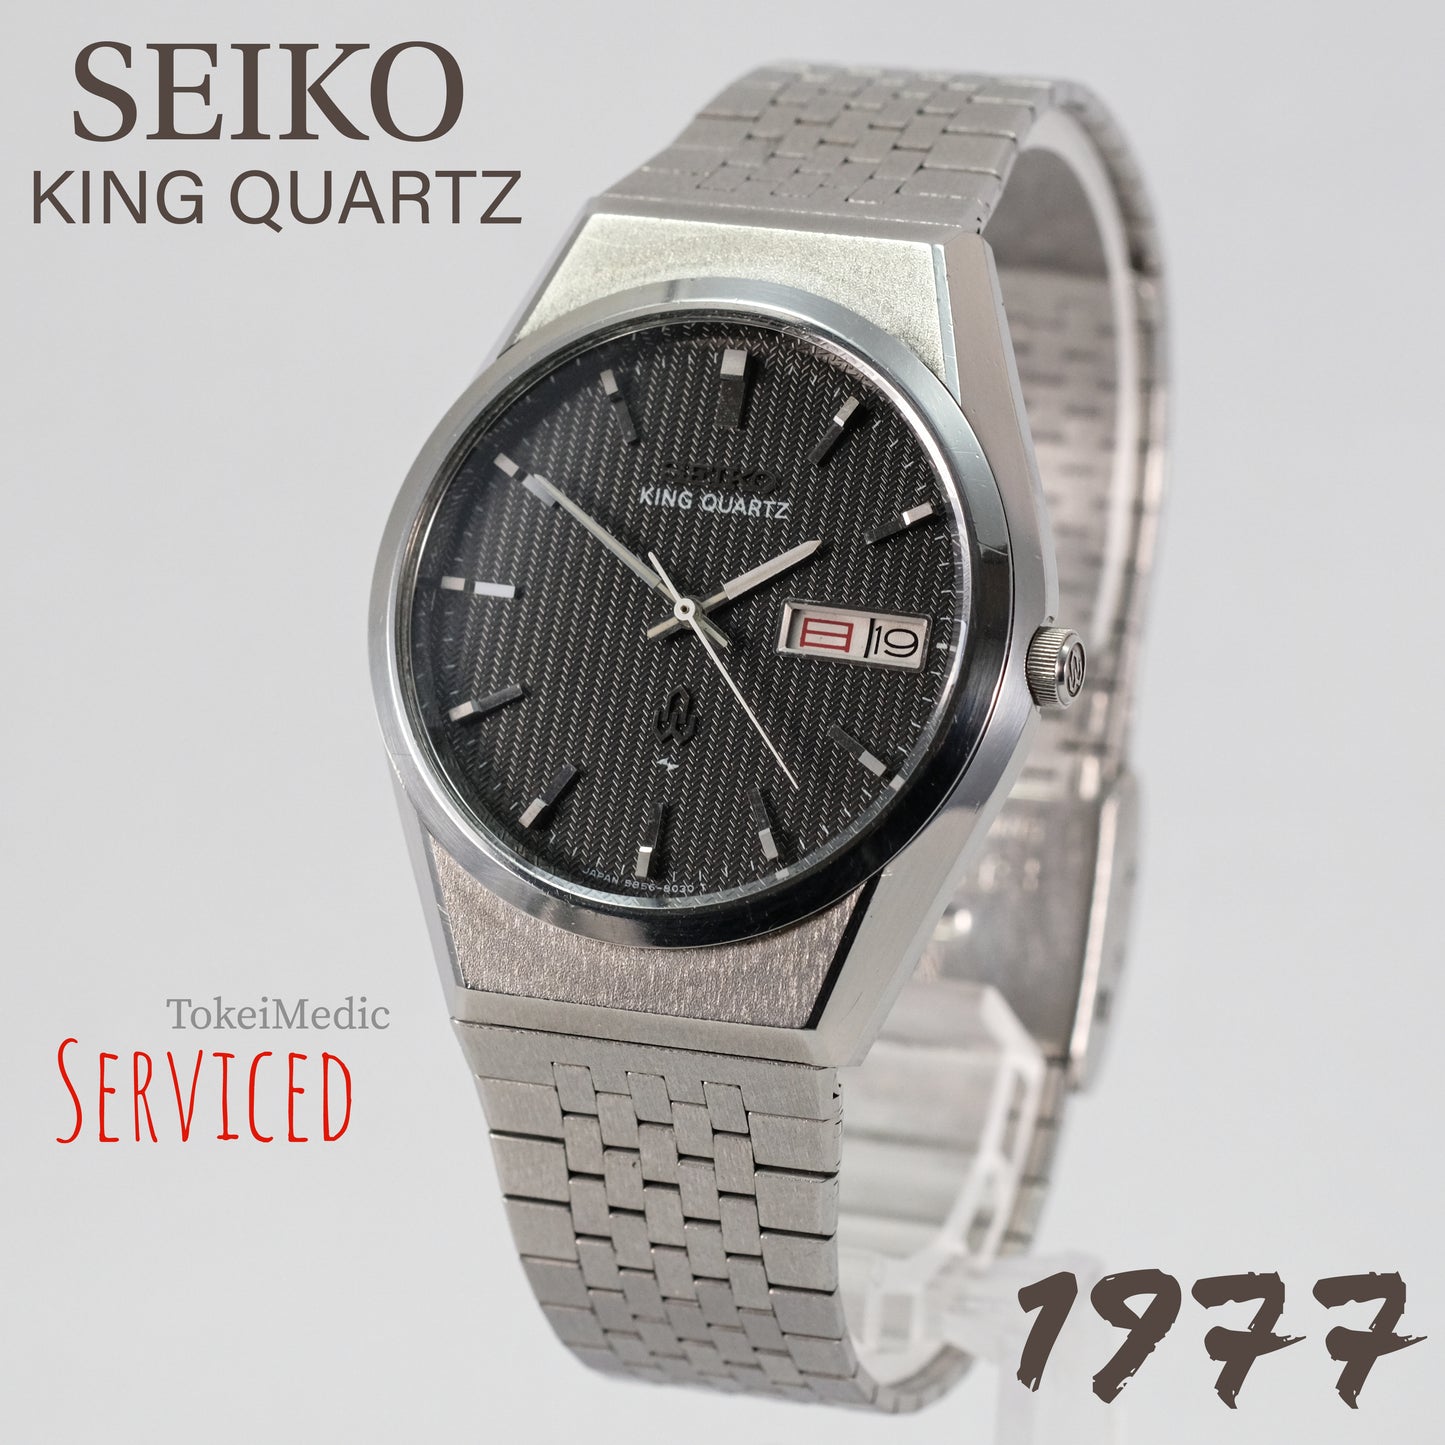 1977 Seiko King Quartz 5856-8020